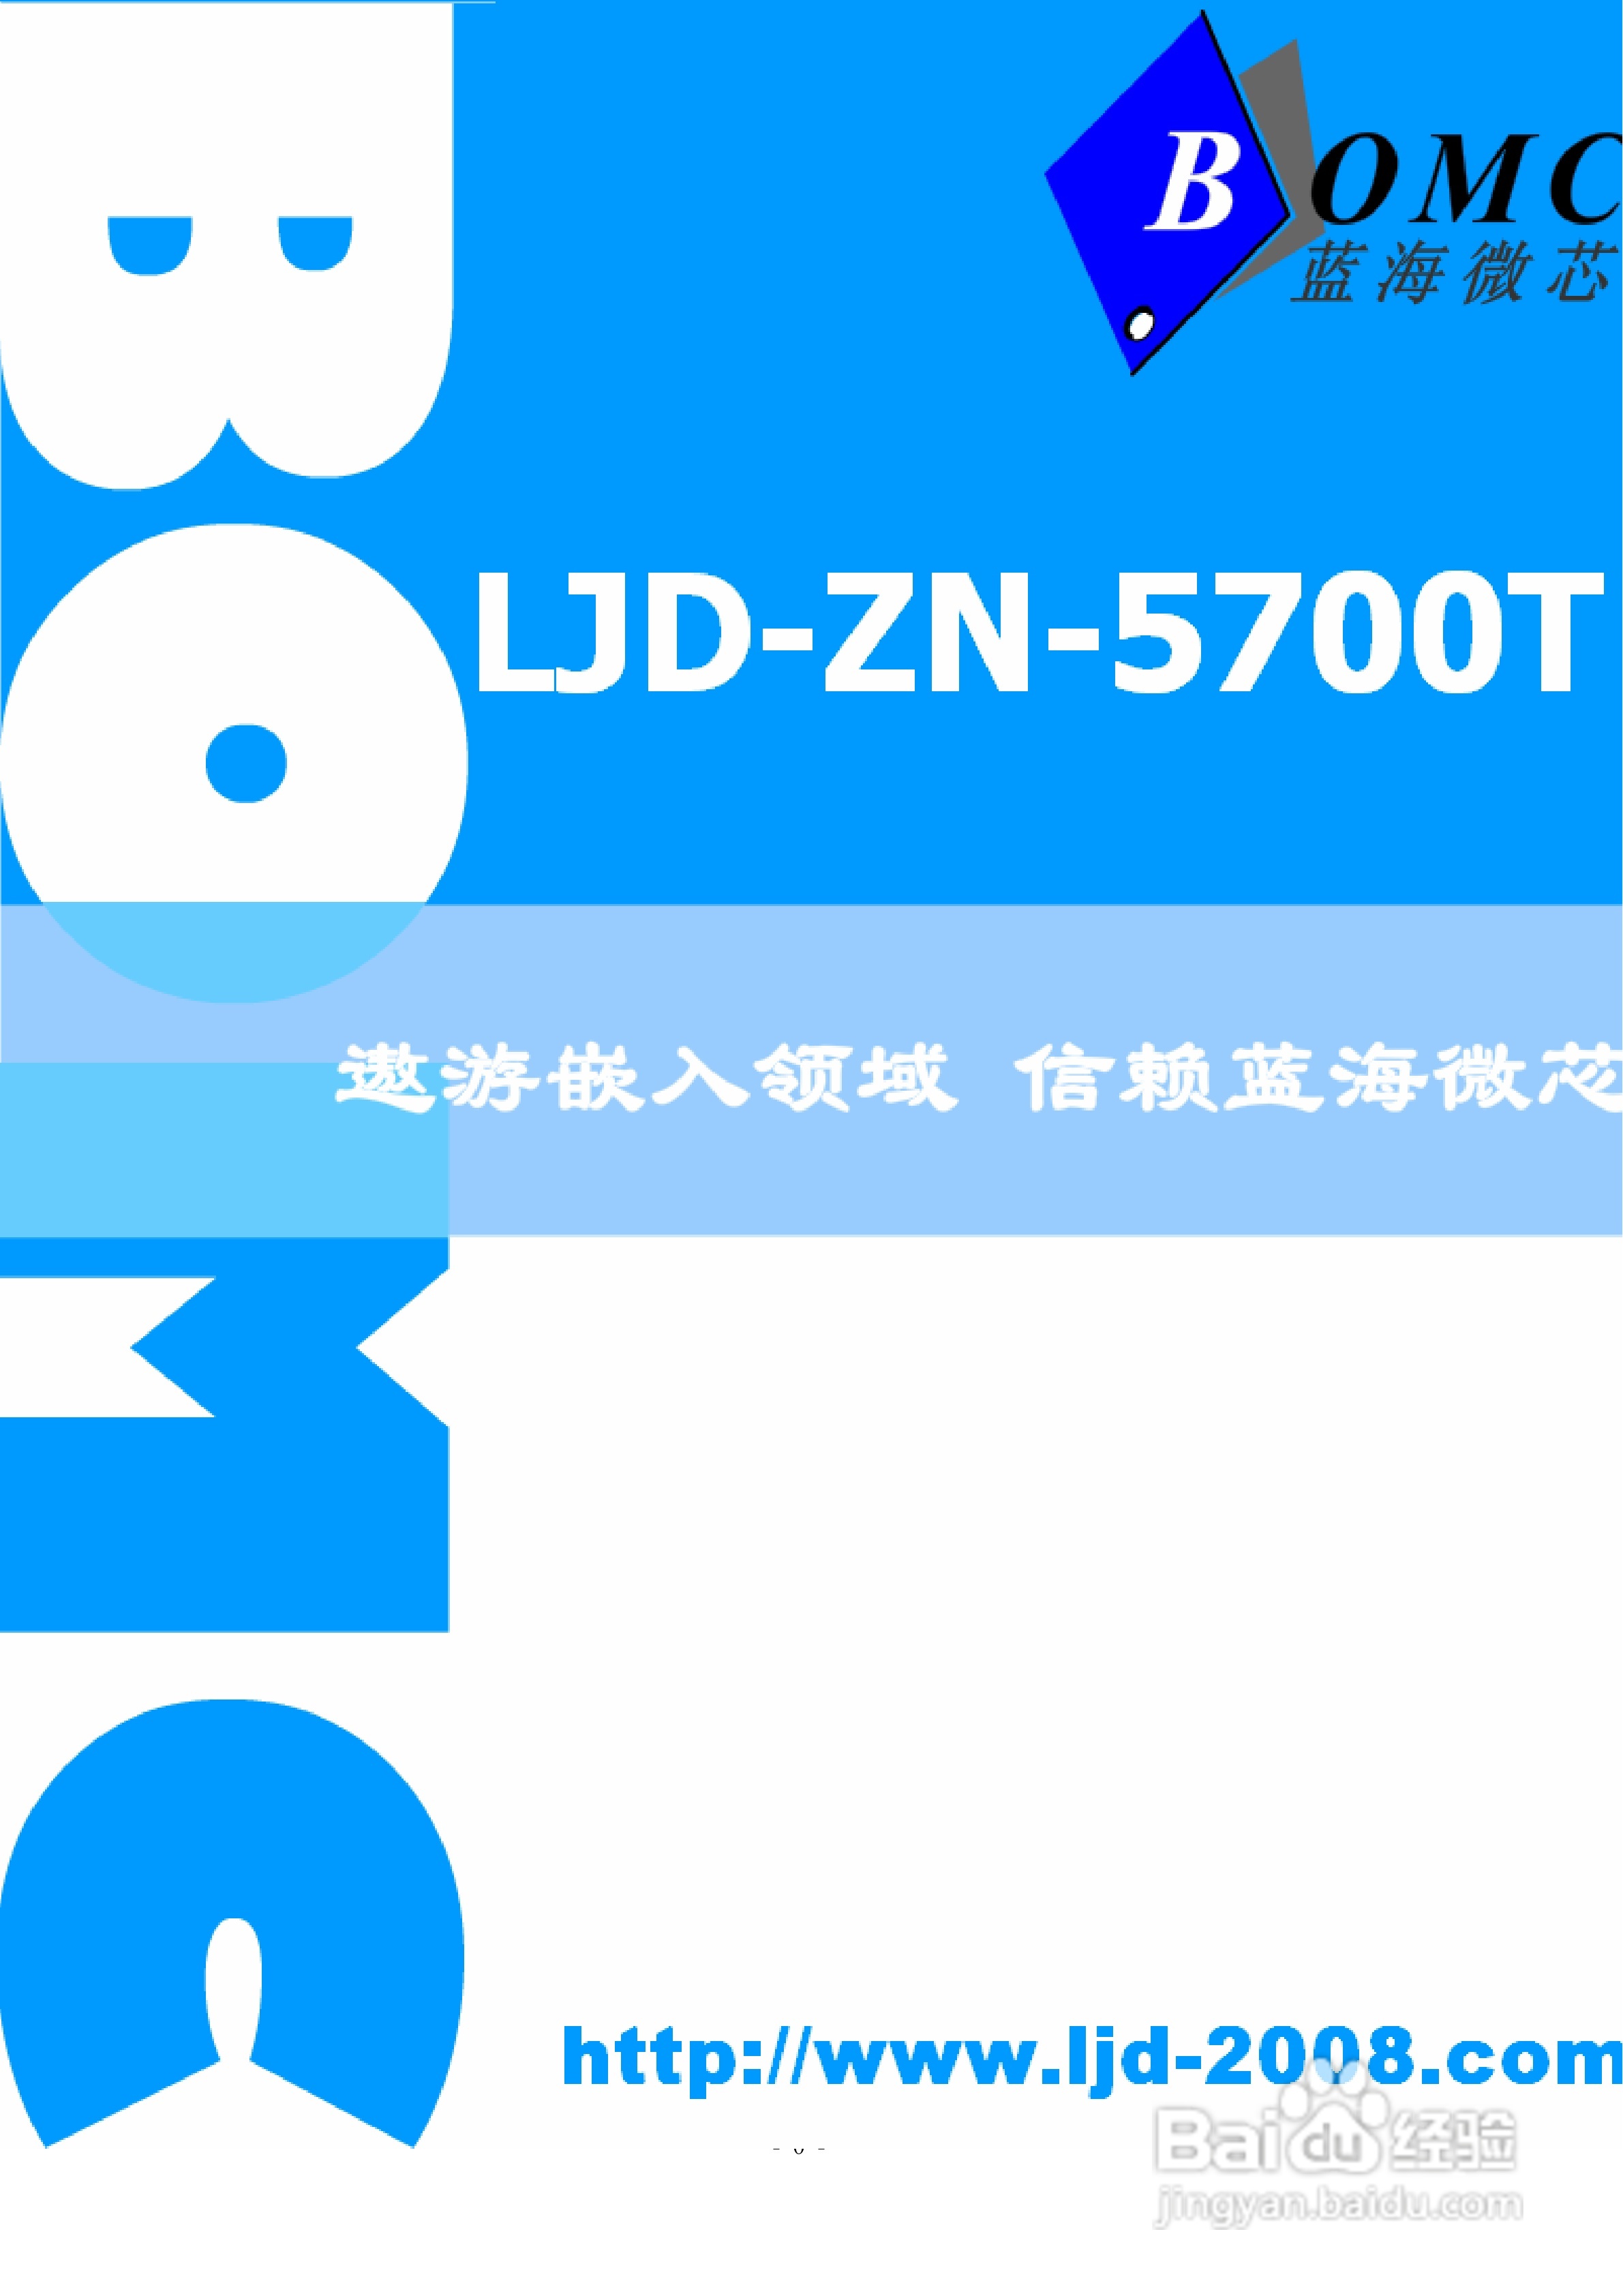 蓝海微芯ljd-zn-5700t 智能显示终端说明书:[1]